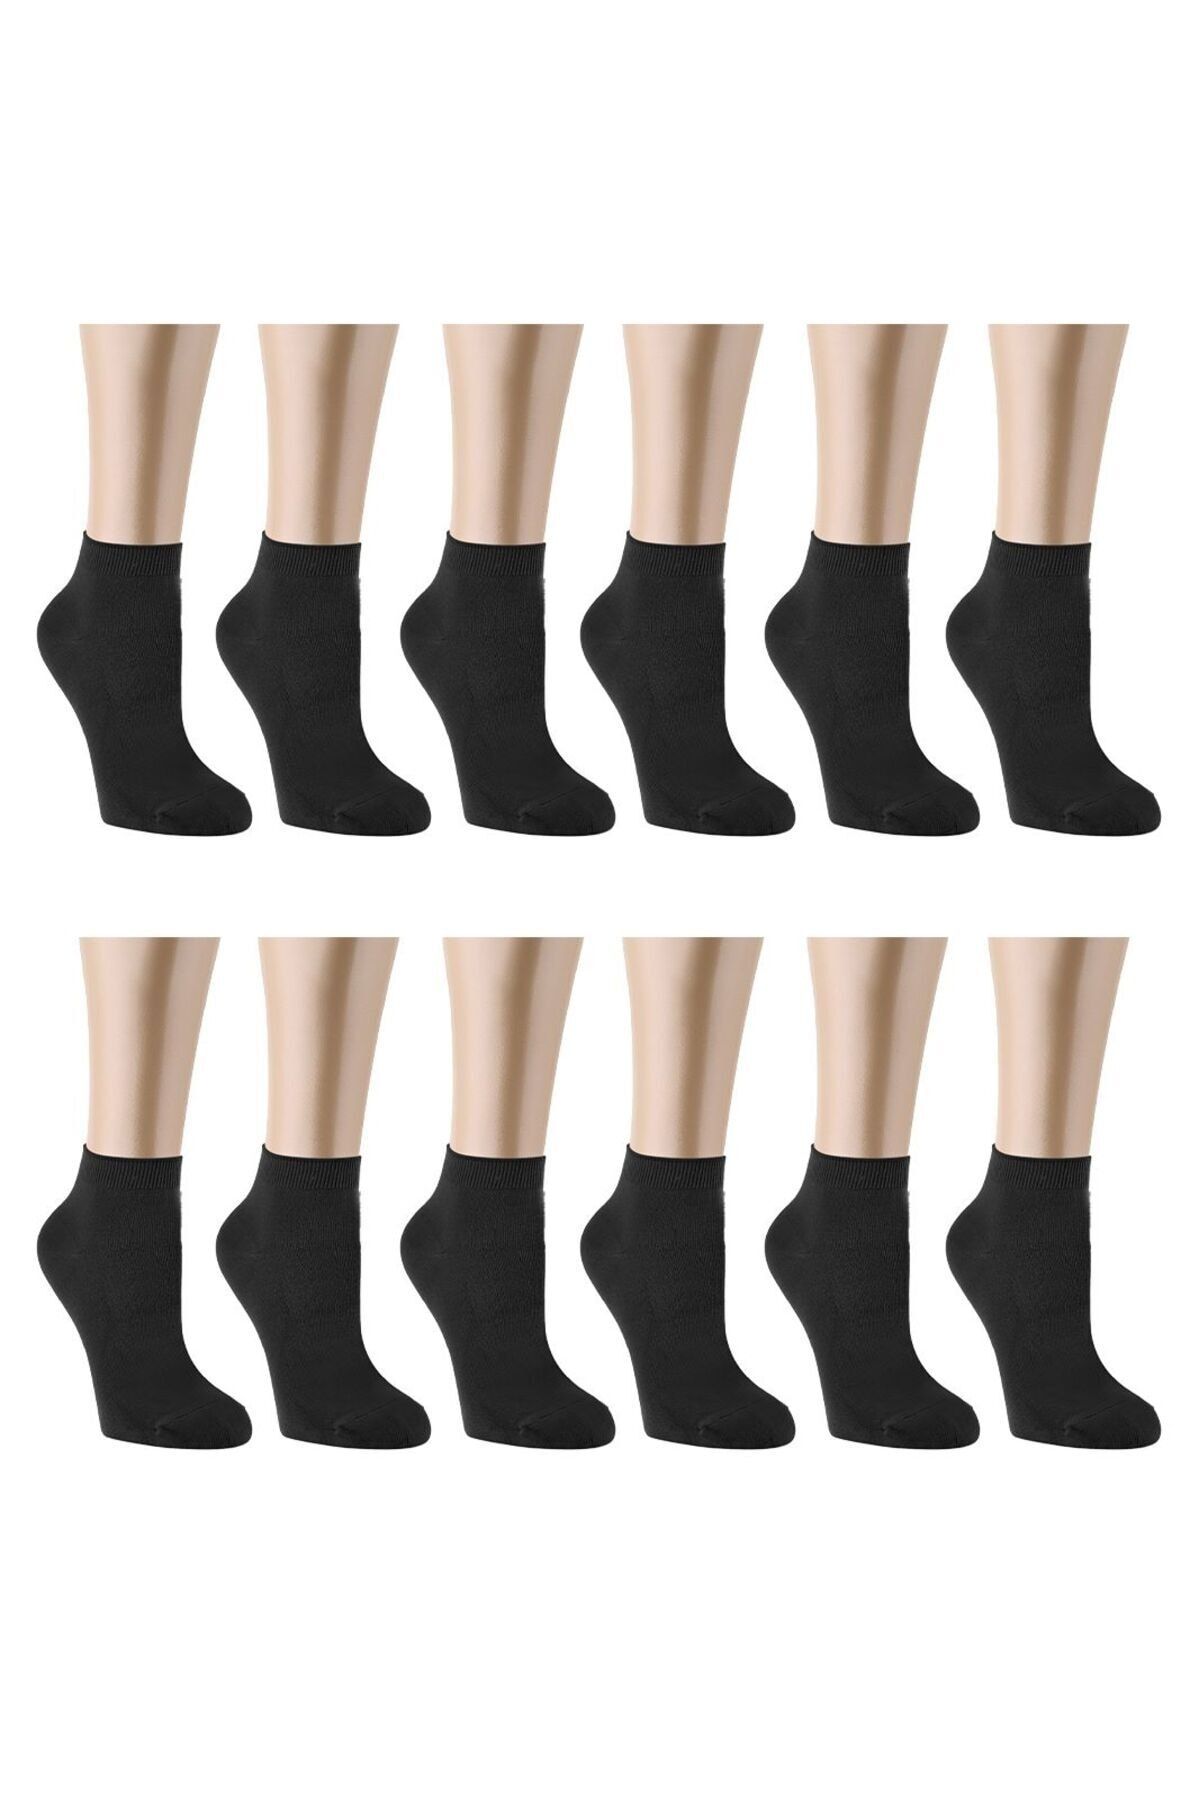 Ozzy Socks 12 Çift Bambu Siyah Erkek Dikişsiz Patik Çorap 4 Mevsim Dayanıklı Topuk Ve Burun